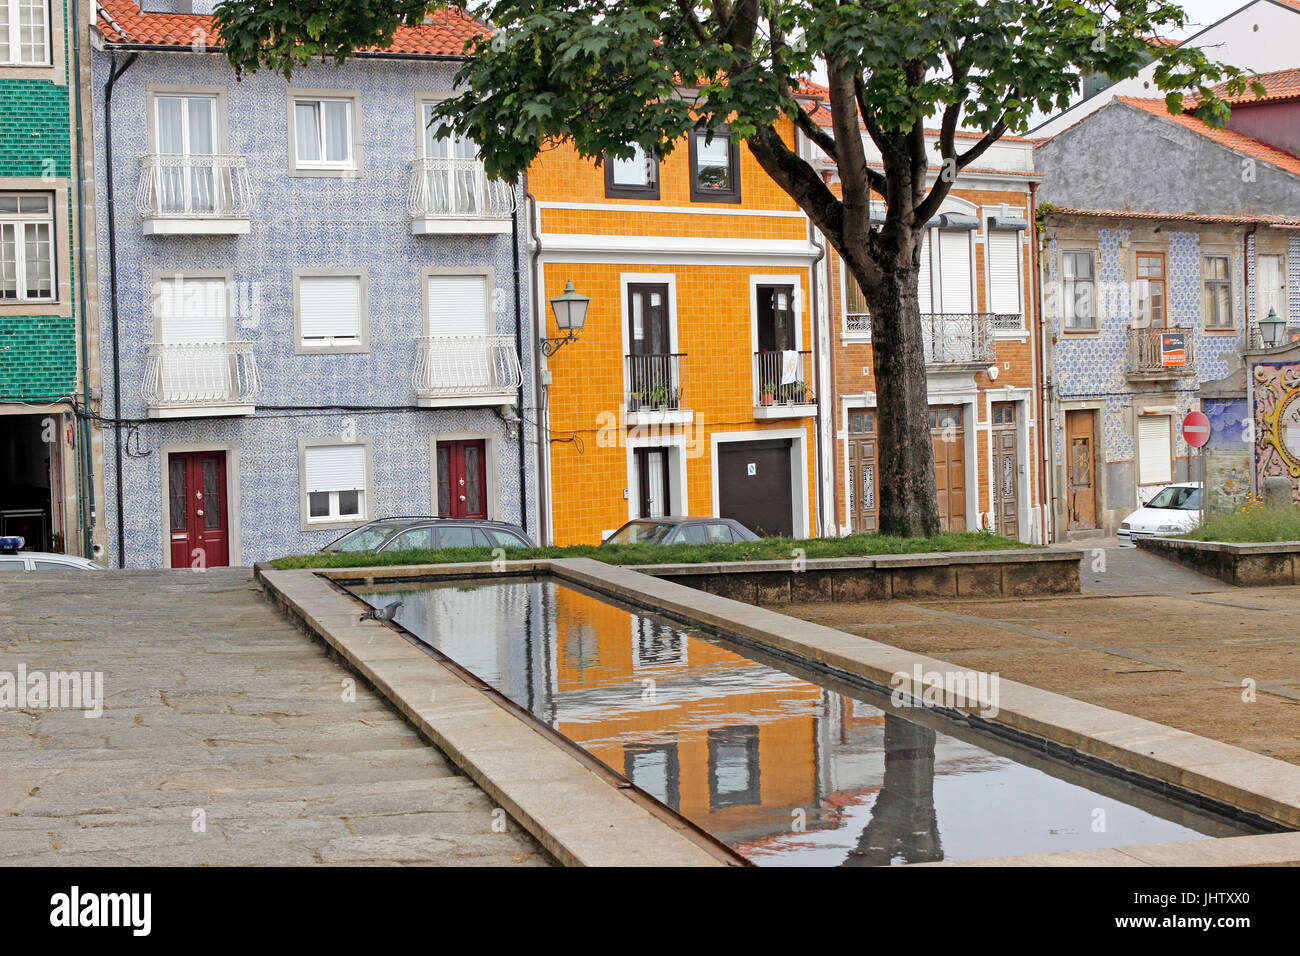 Façade tuiles bâtiments reflecting pool quartier résidentiel Vila do Conde Portugal Banque D'Images